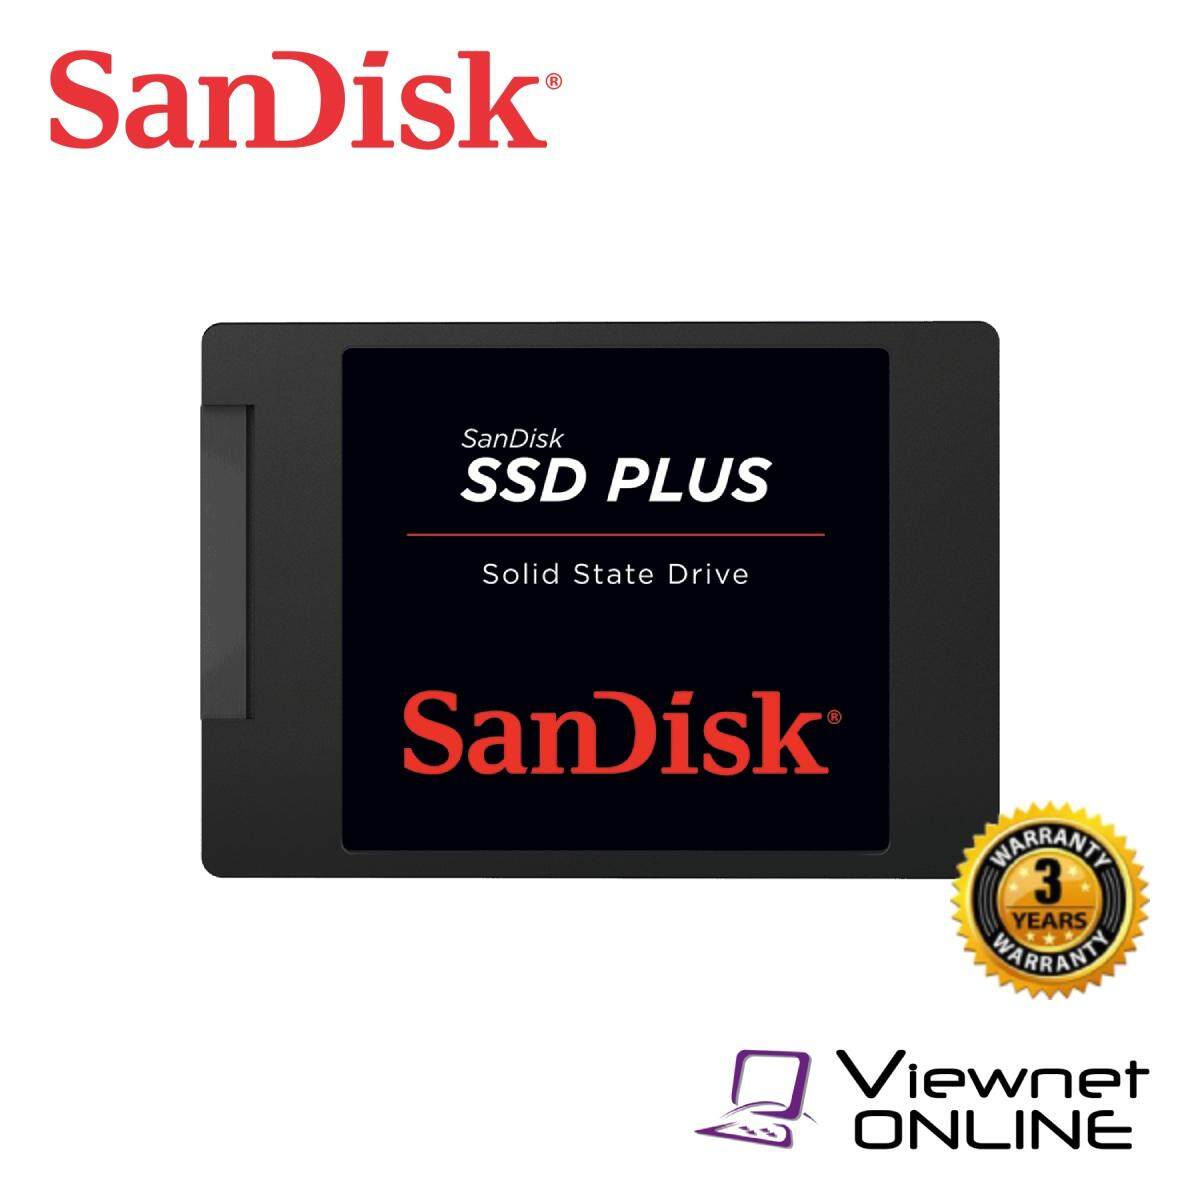 SanDisk SSD Plus SATA III 120GB/240GB/480GB/1TB (6 Gb/s) Internal Solid State Drive (up to 535MB/s) - 480GB 